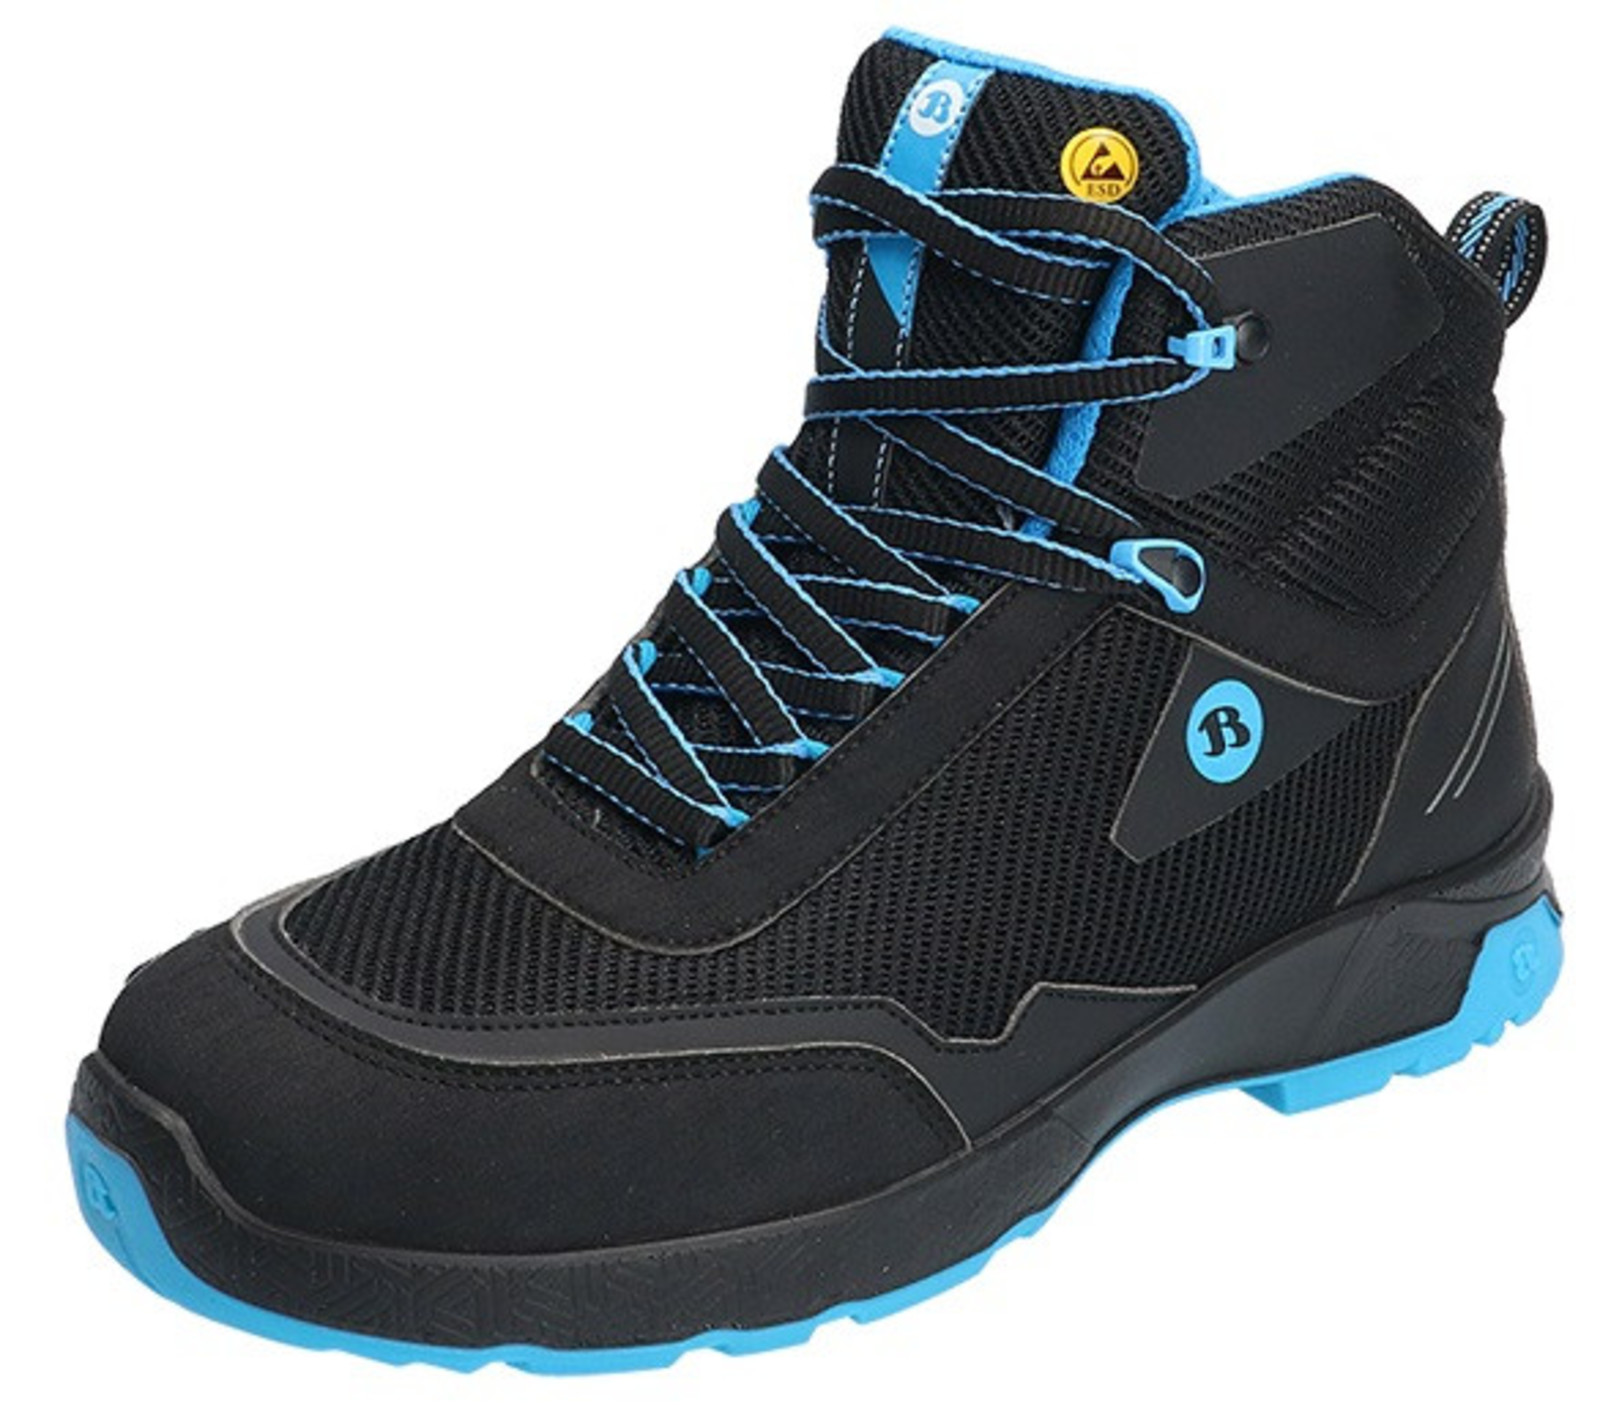 Bezpečnostná členková obuv Baťa Summ One S3 ESD - veľkosť: 41, farba: čierna